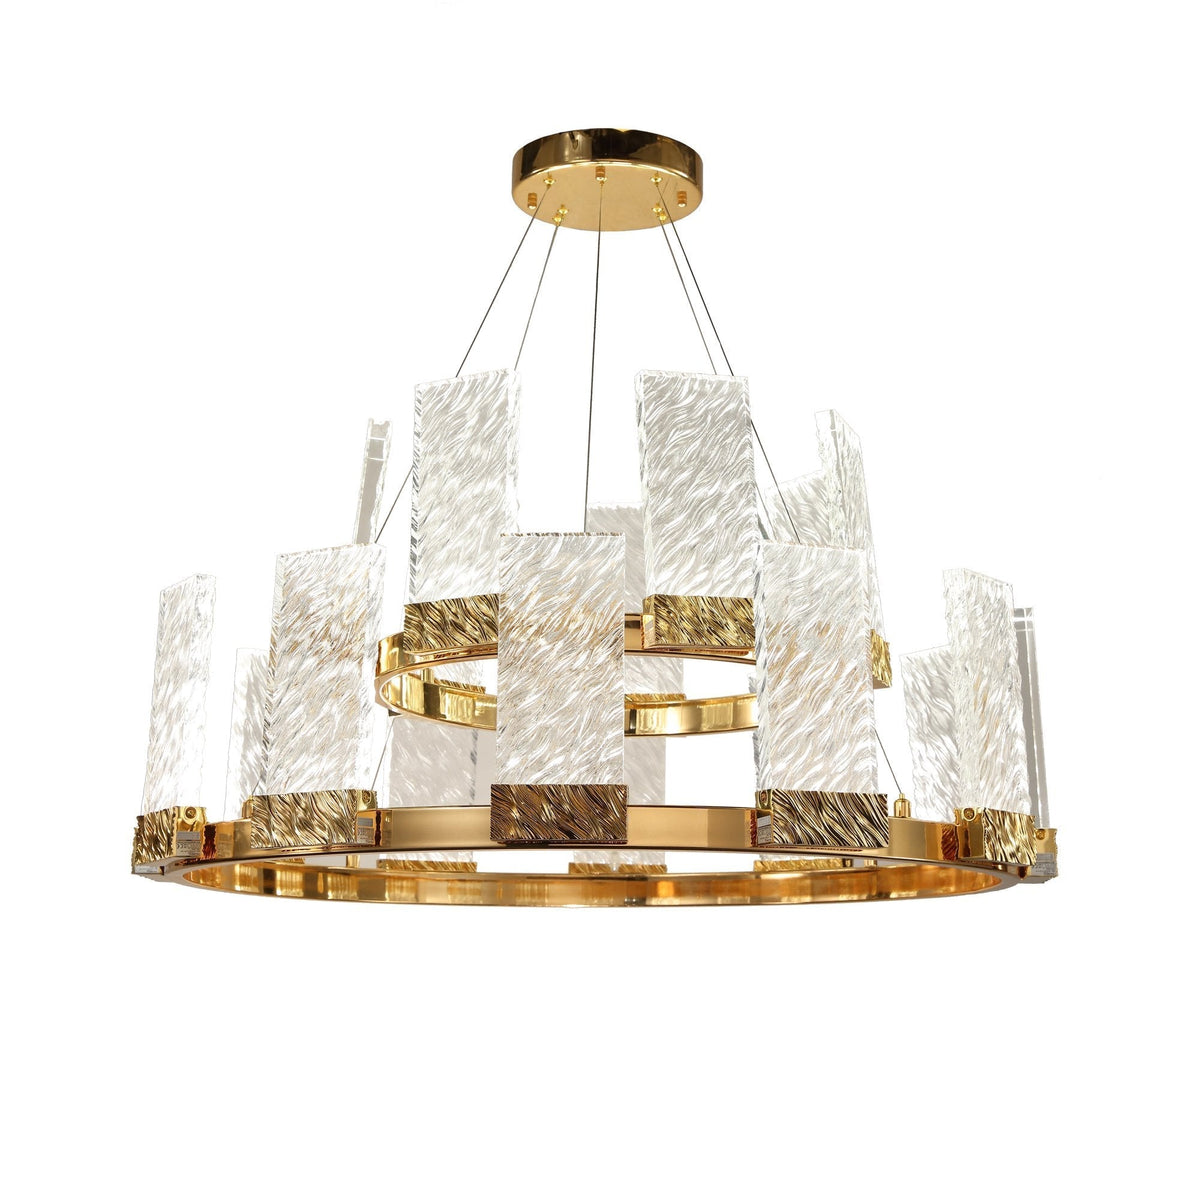 Joseph 2-Tier Round LED Glass Chandelier, Elegant Designer Lamp